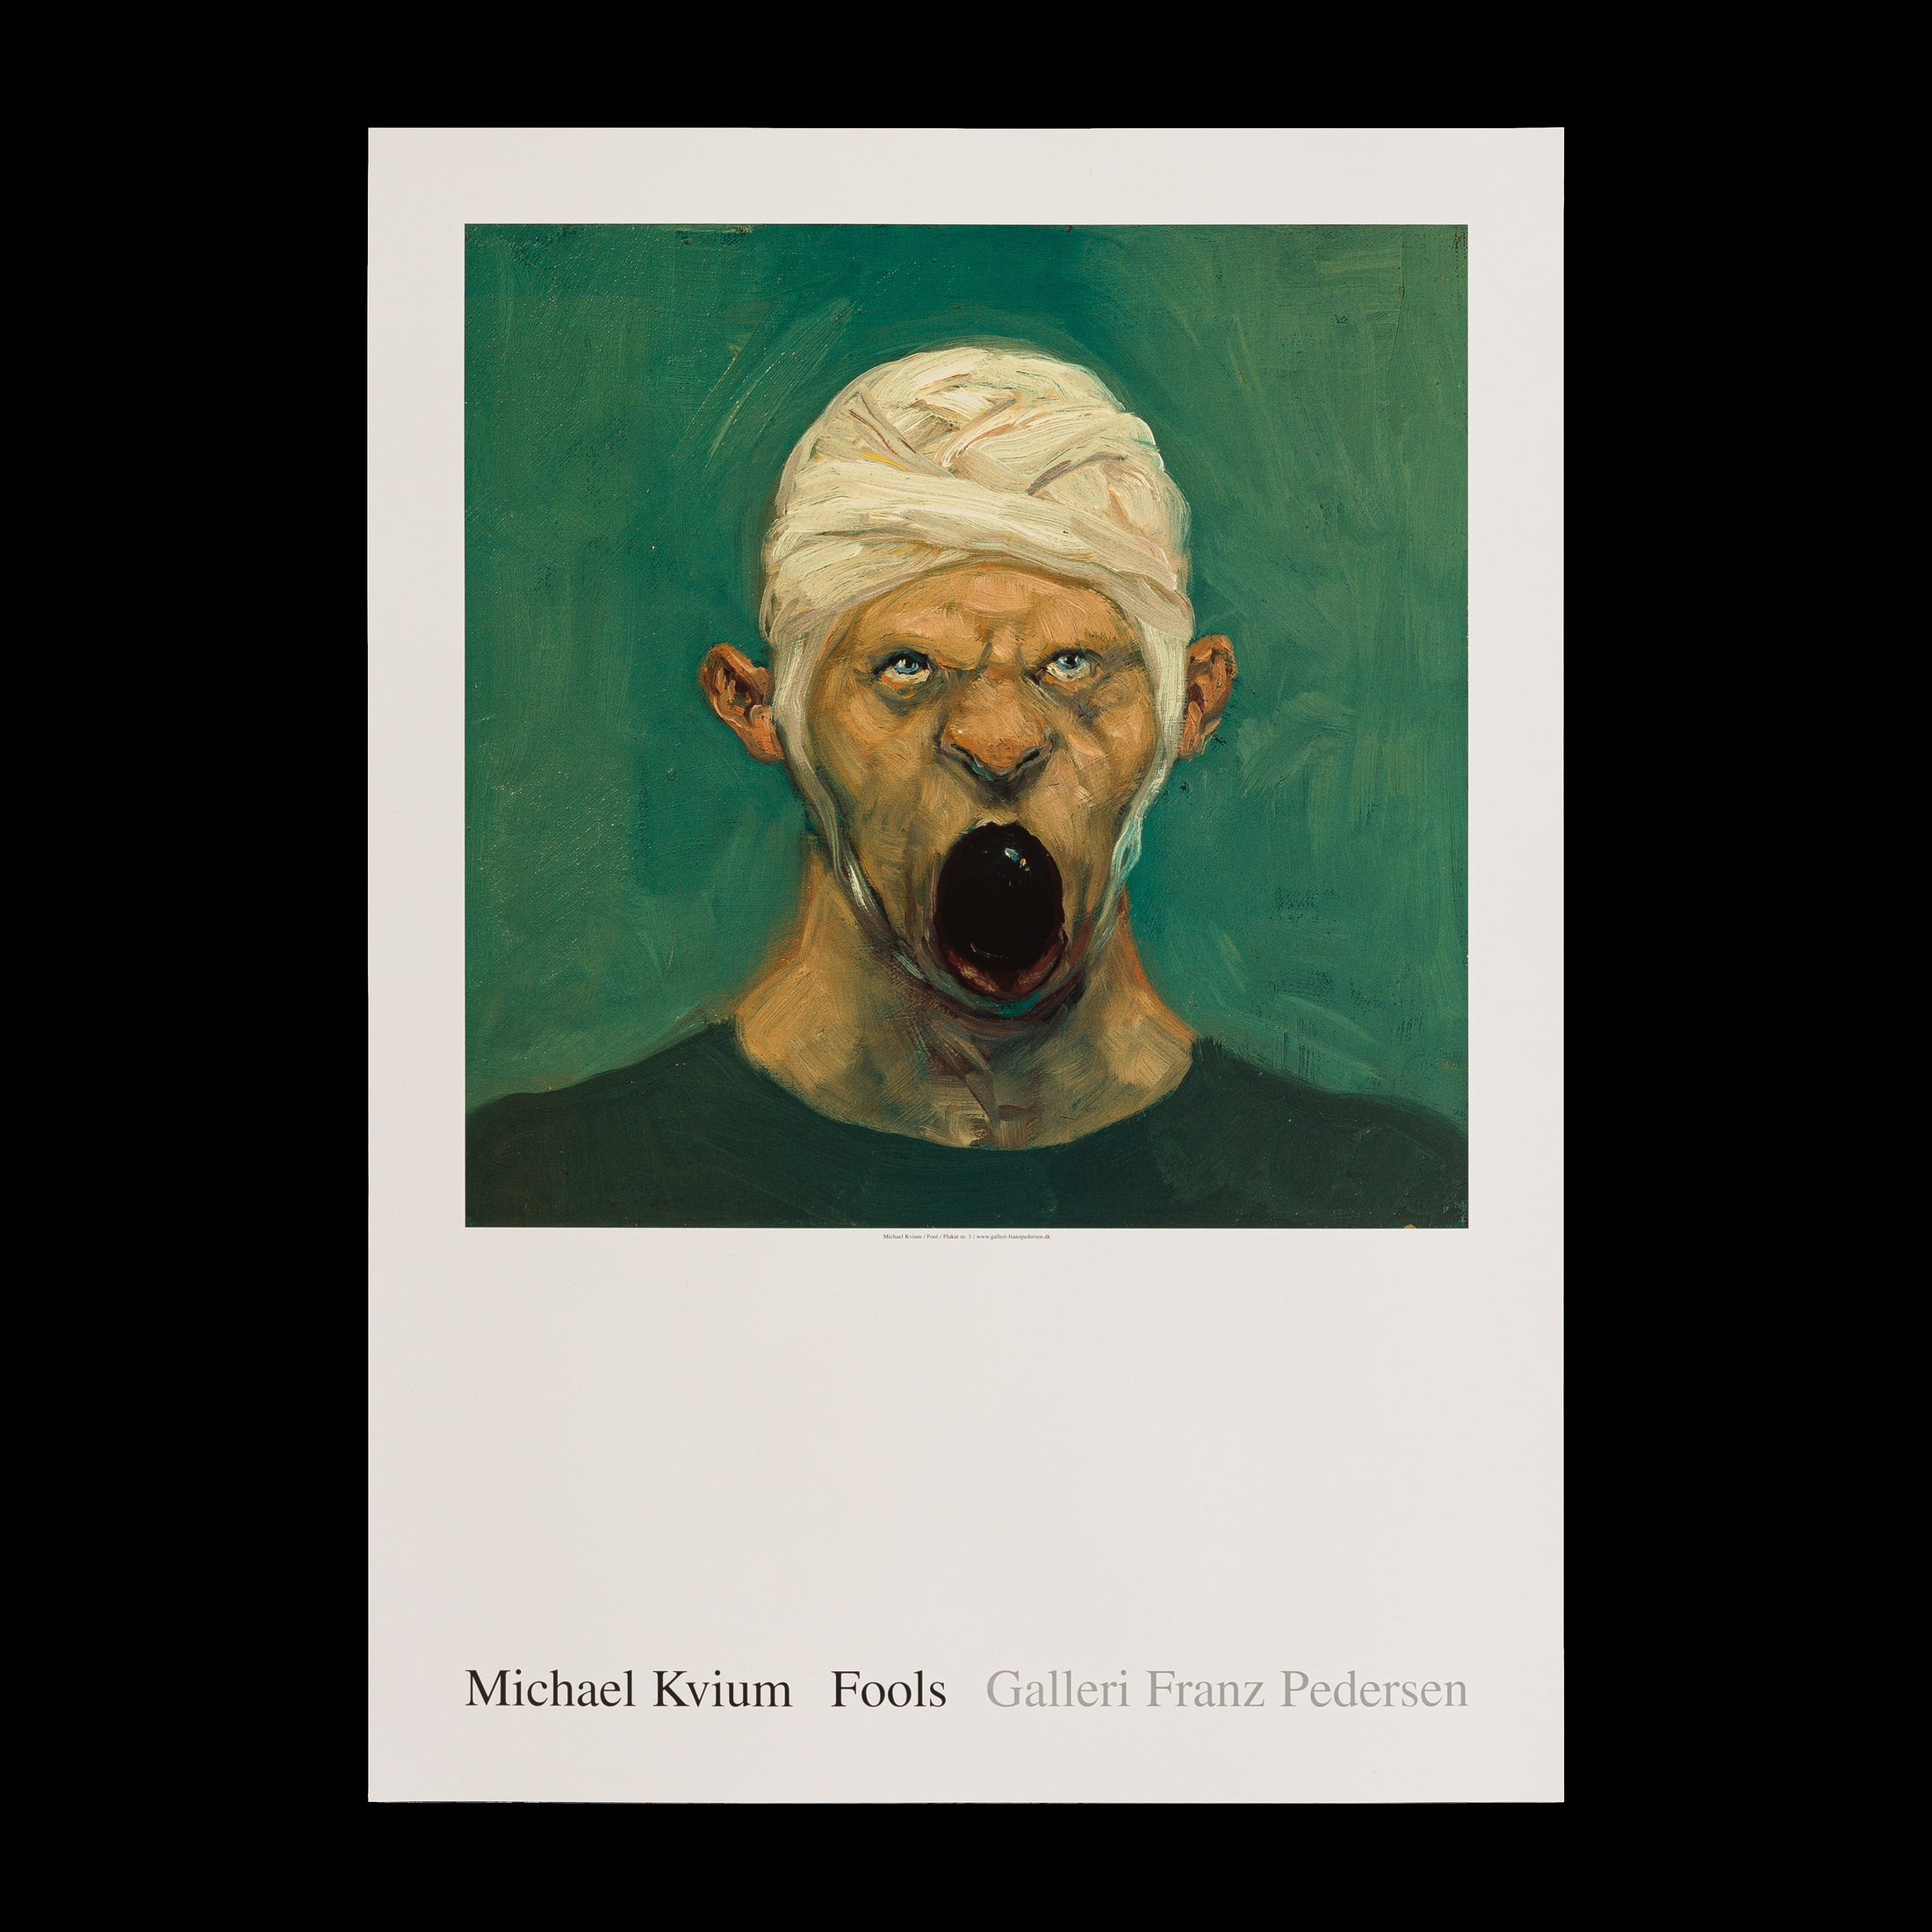 Plakat med Michael Kviums maleri Fool no. 14, der viser en figur med et bandageret hoved og åben mund, udtryk for stærk følelse, fra Galleri Franz Pedersen.